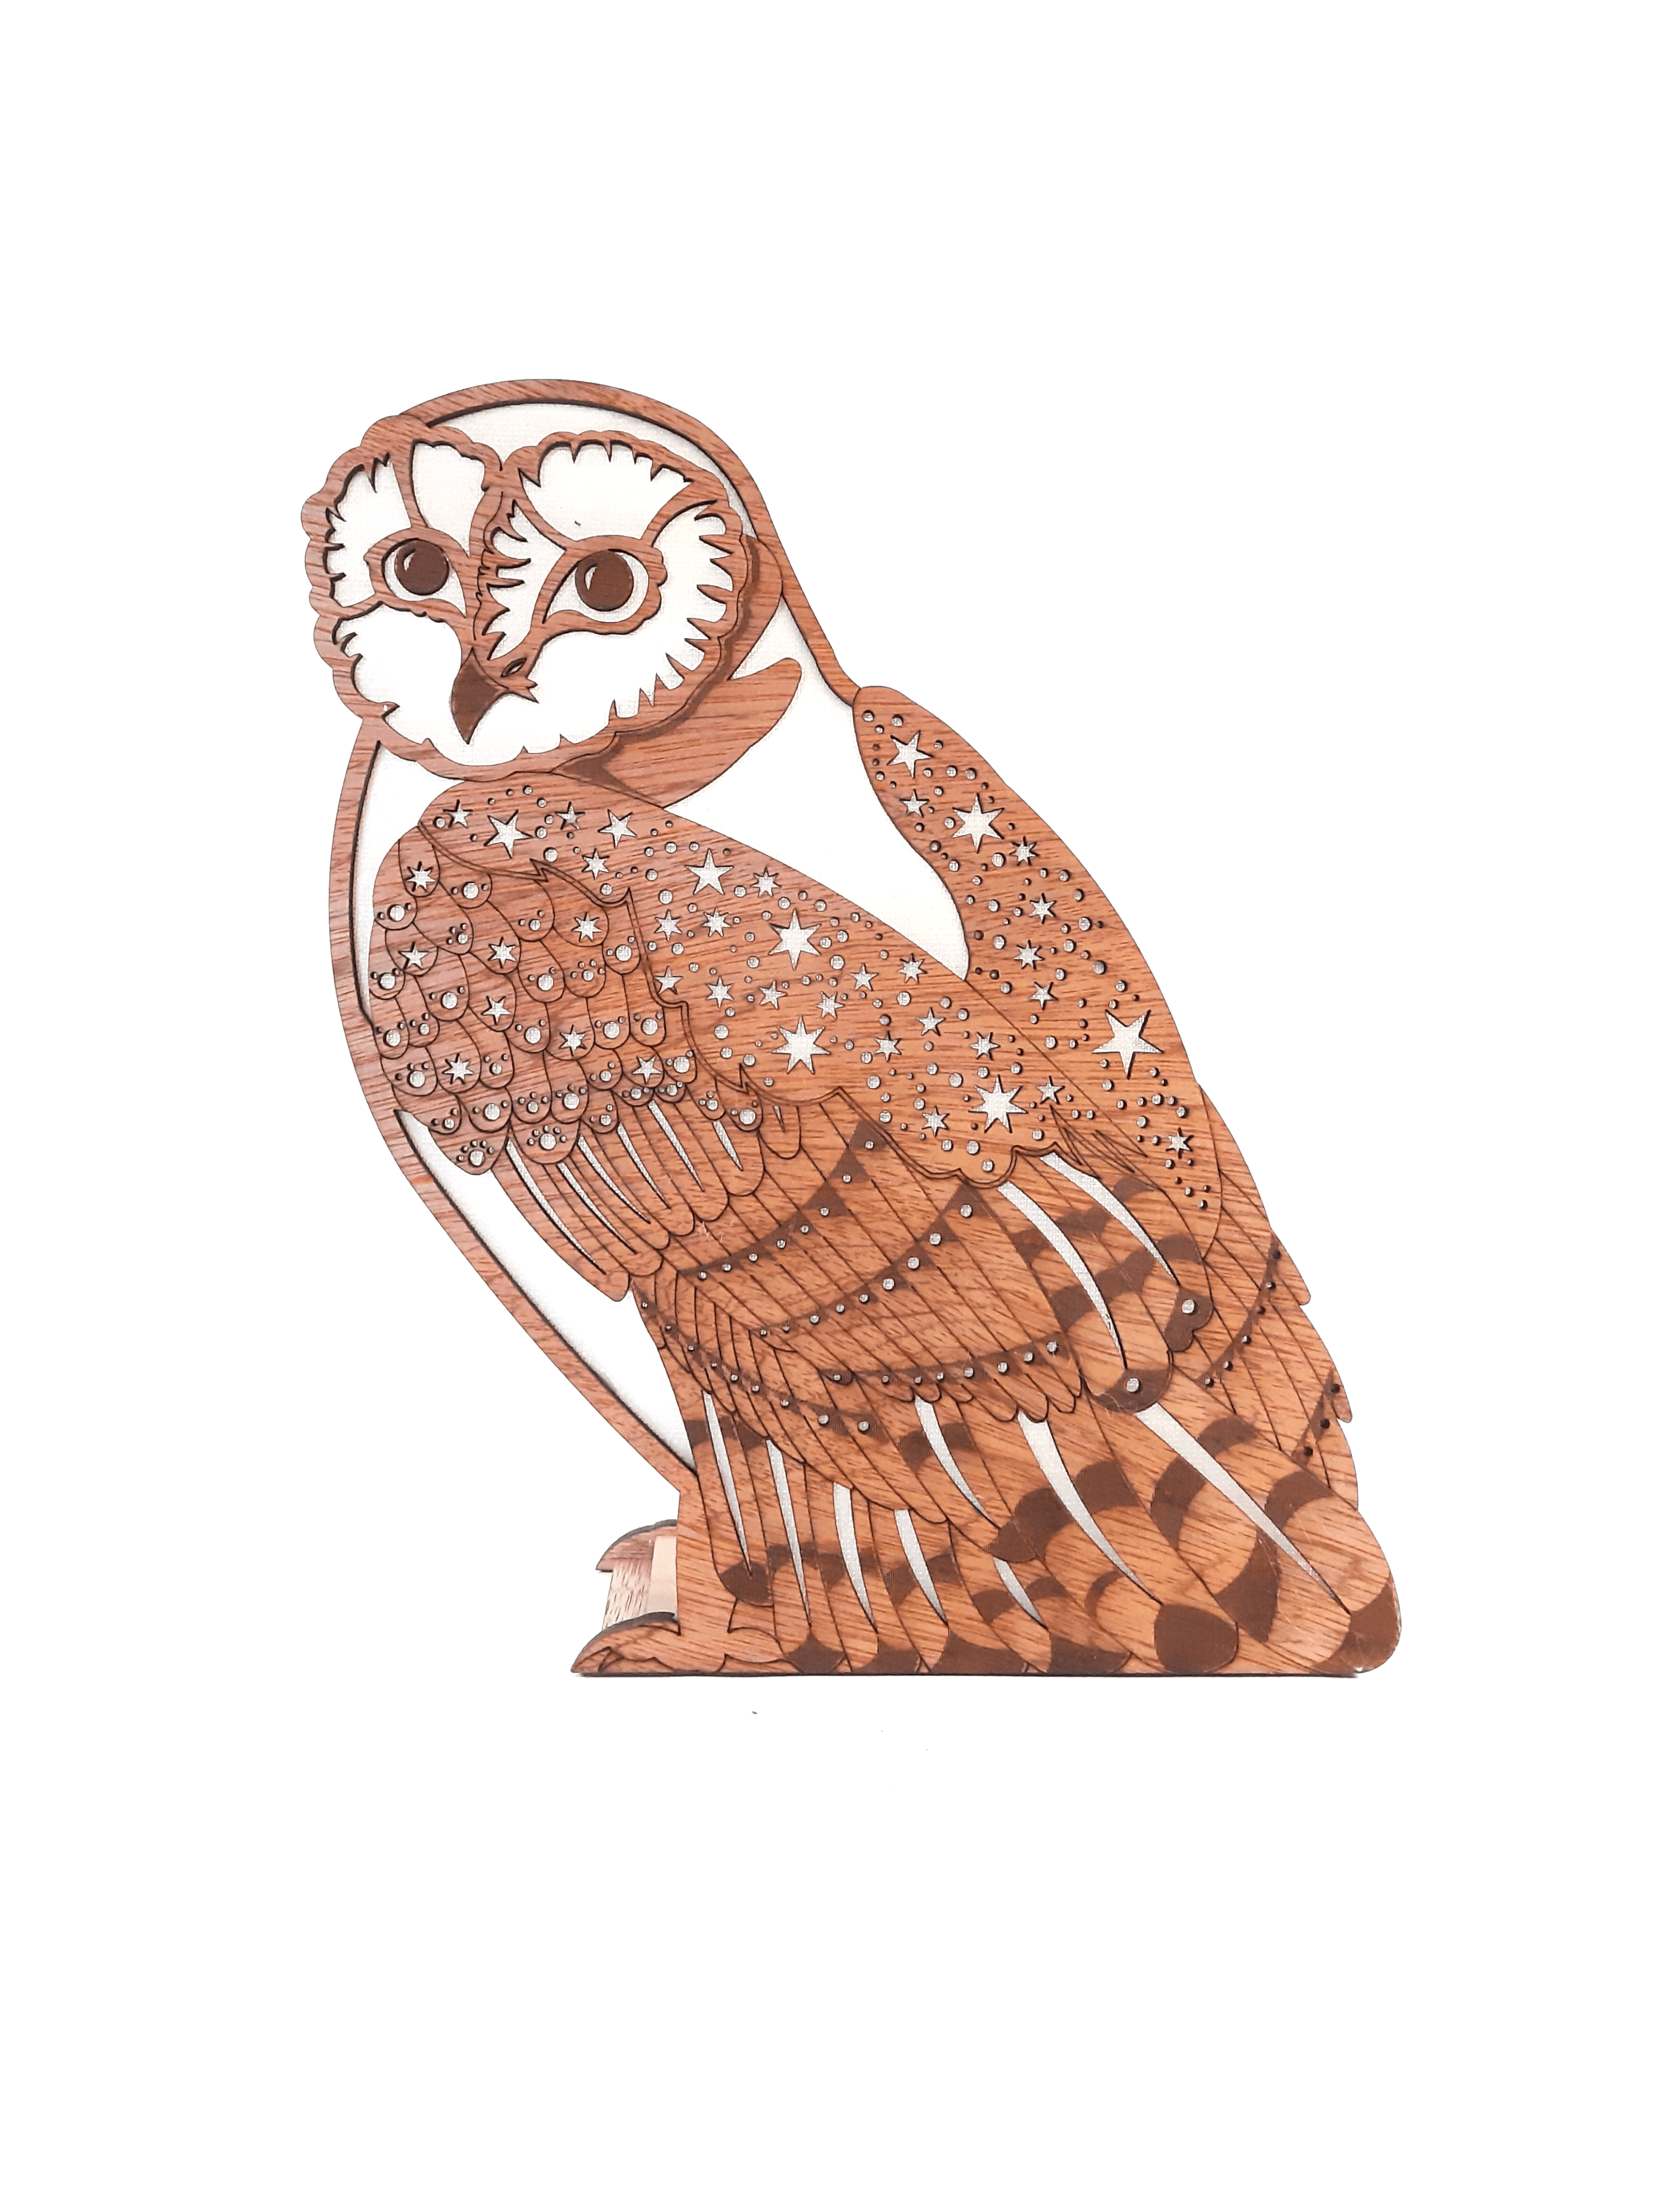 Starry Barn Owl, Lamp